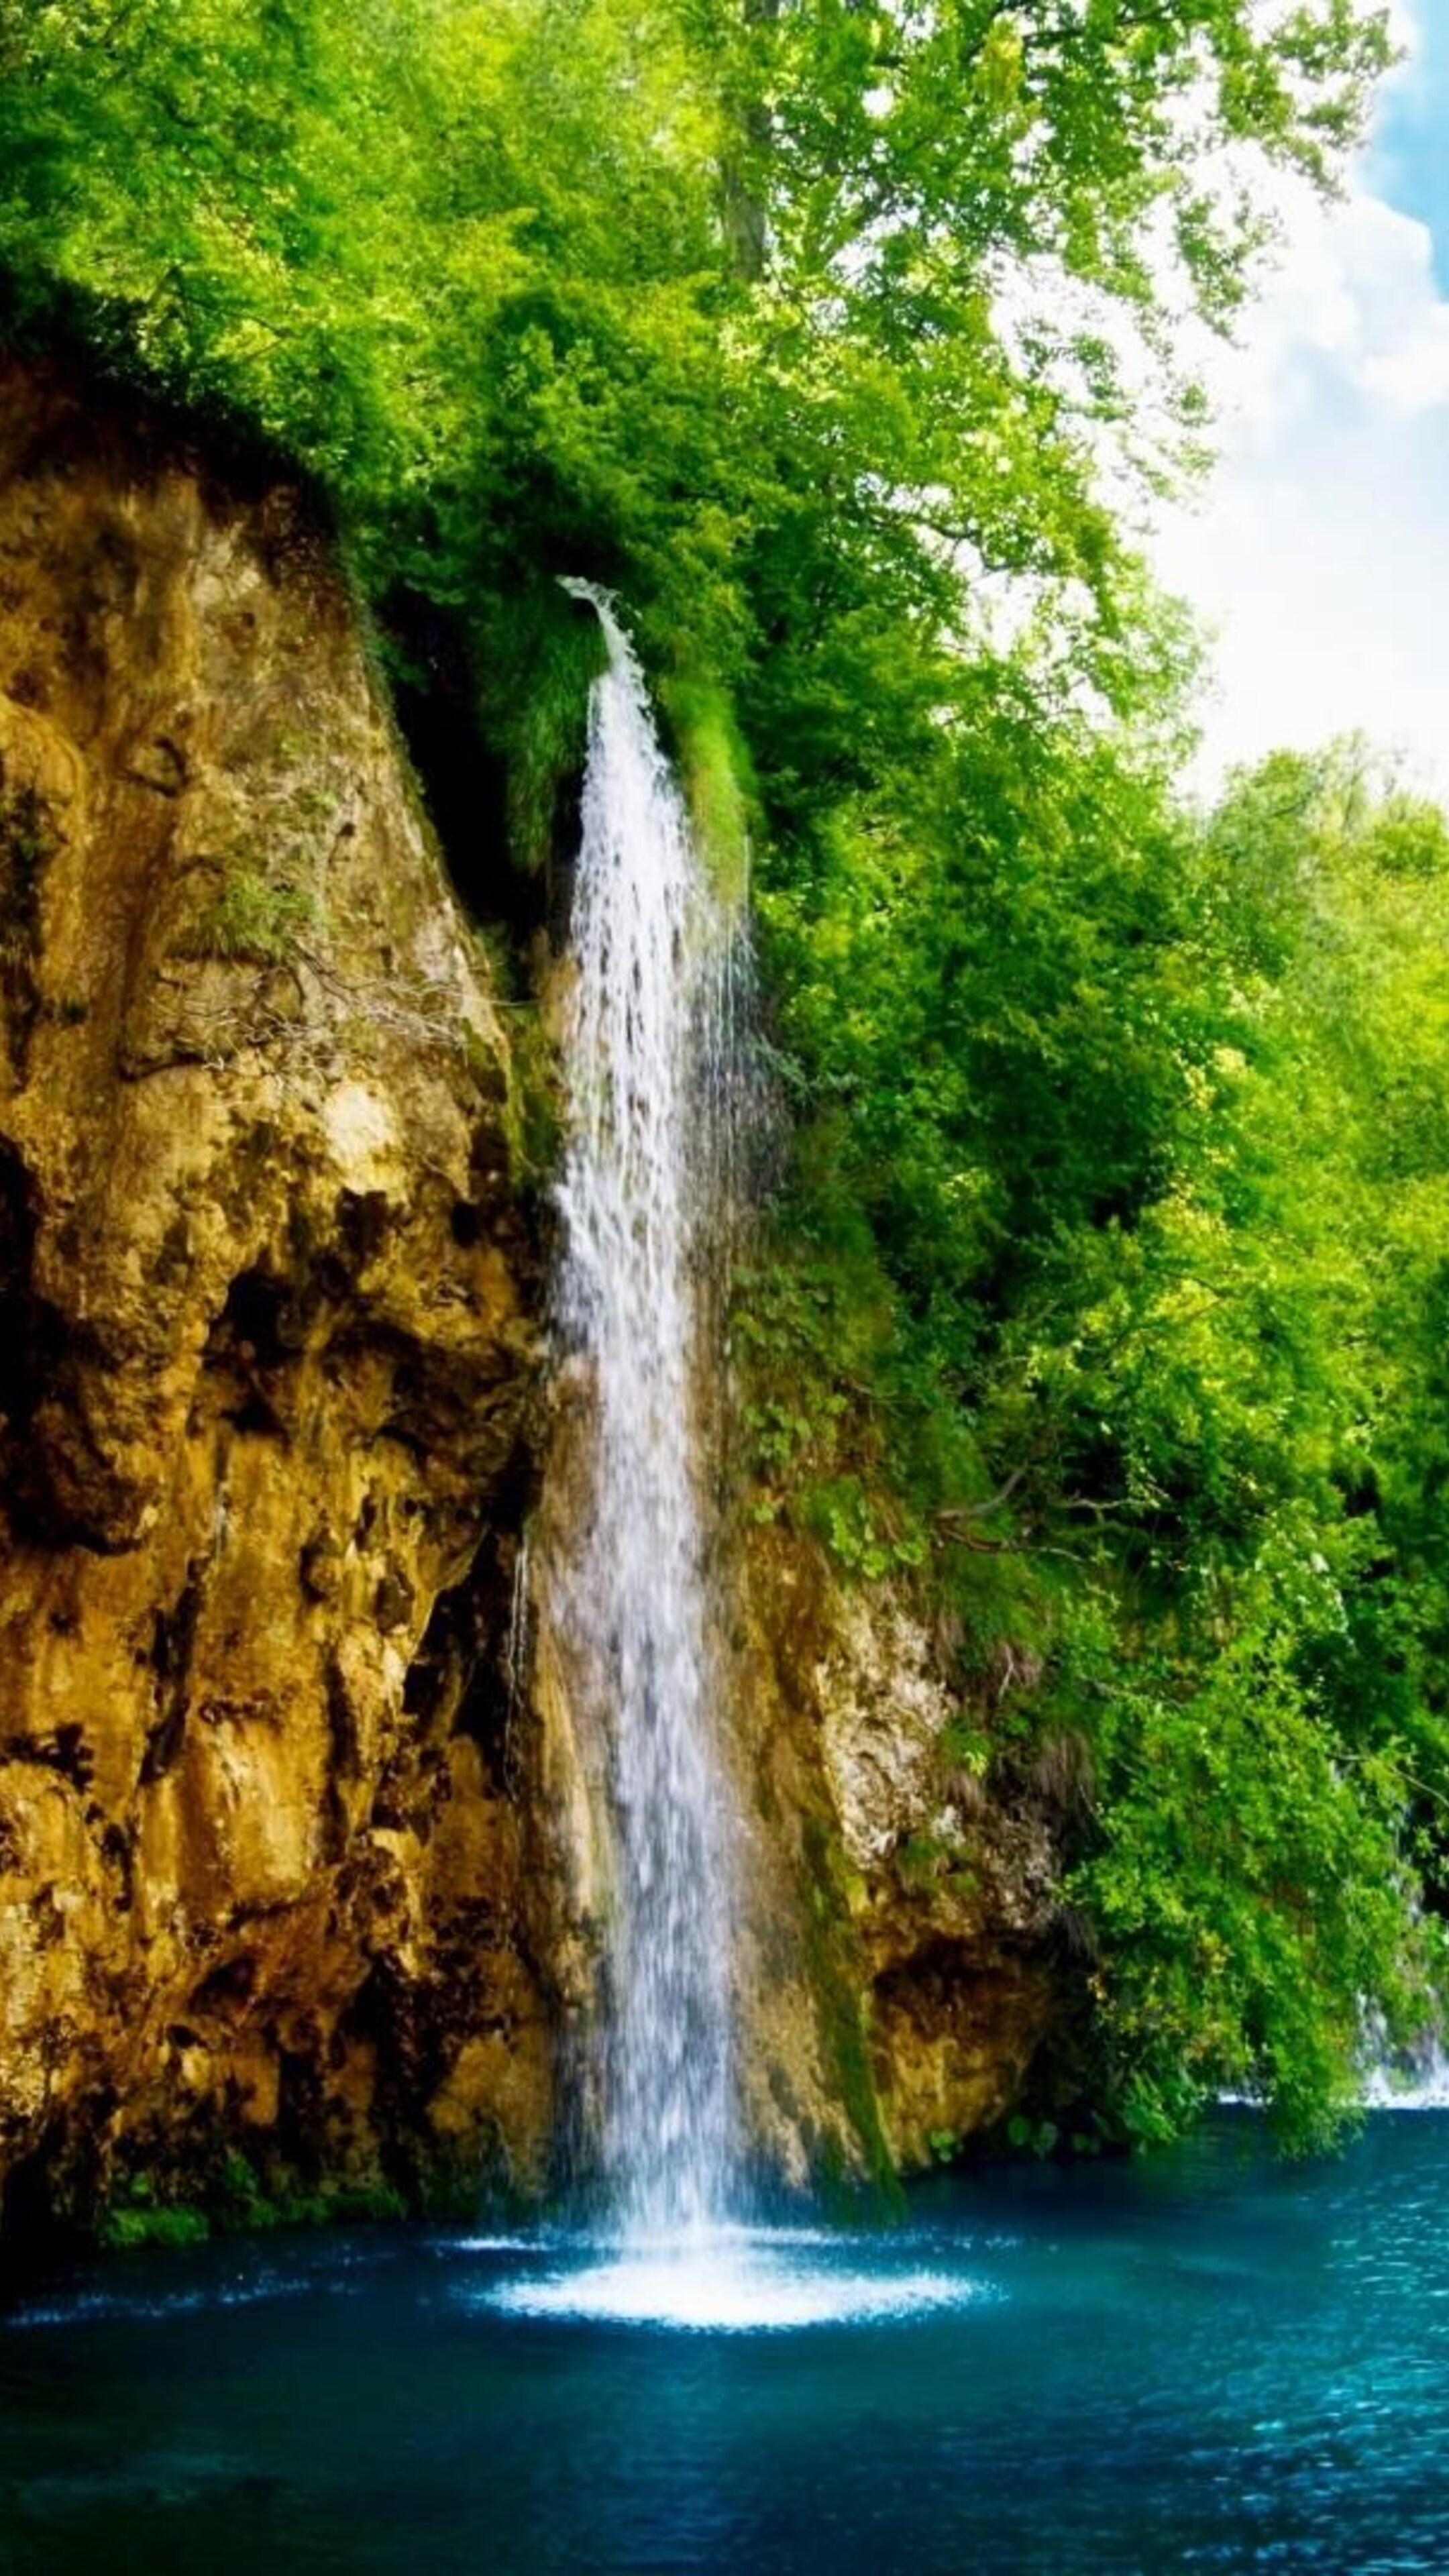 Обои на телефон с галереи. Плитвицкие озёра Хорватия. Водопад у озера. Красивые водопады. Живая природа.